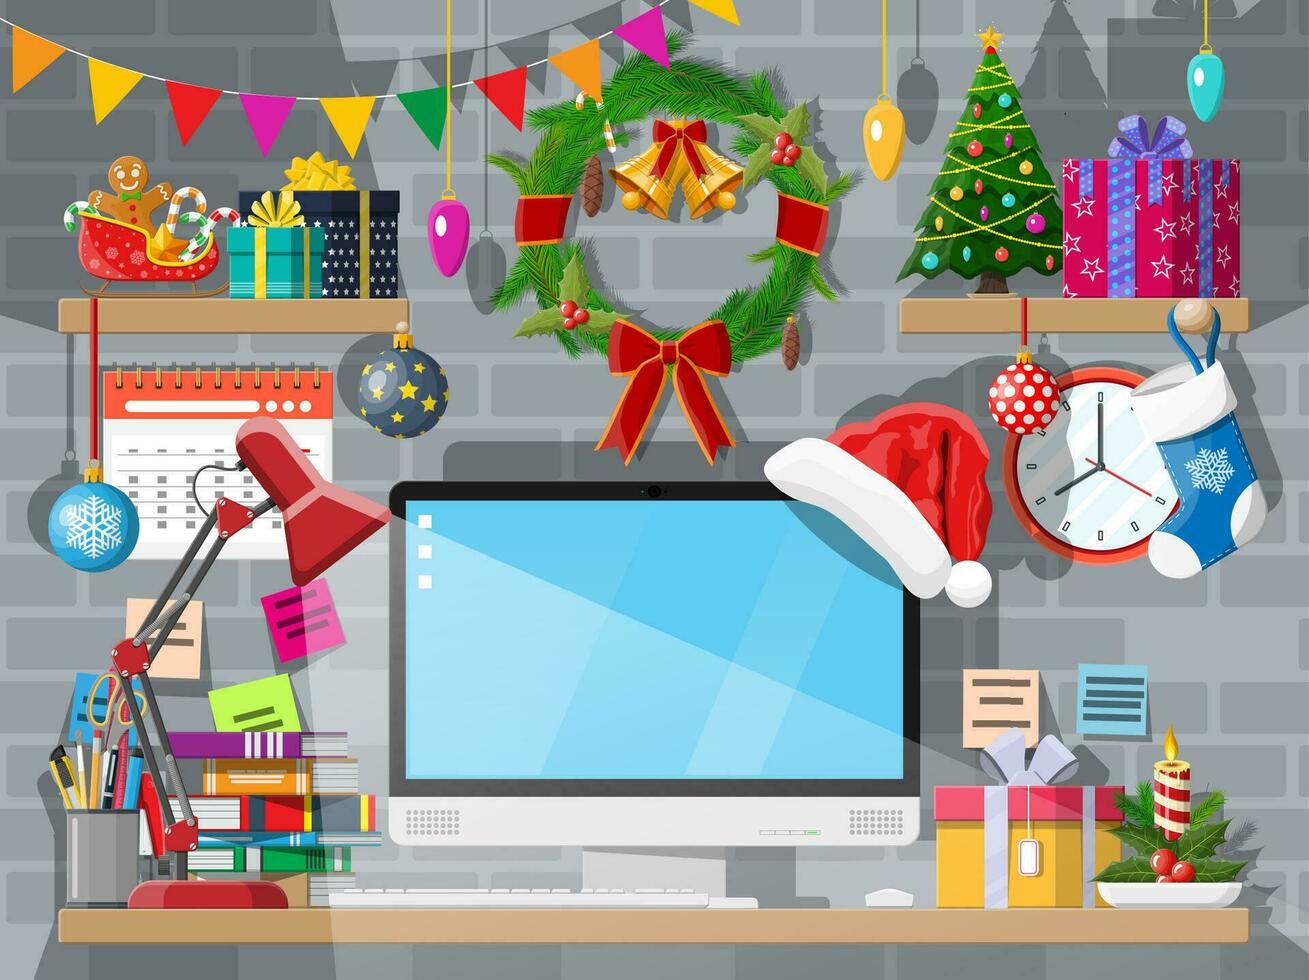 Navidad o nuevo año oficina escritorio espacio de trabajo interior. regalo caja, Navidad árbol, computadora ordenador personal, guirnalda libros relojes calendario. vector ilustración. fiesta Navidad celebracion. vector ilustración plano estilo